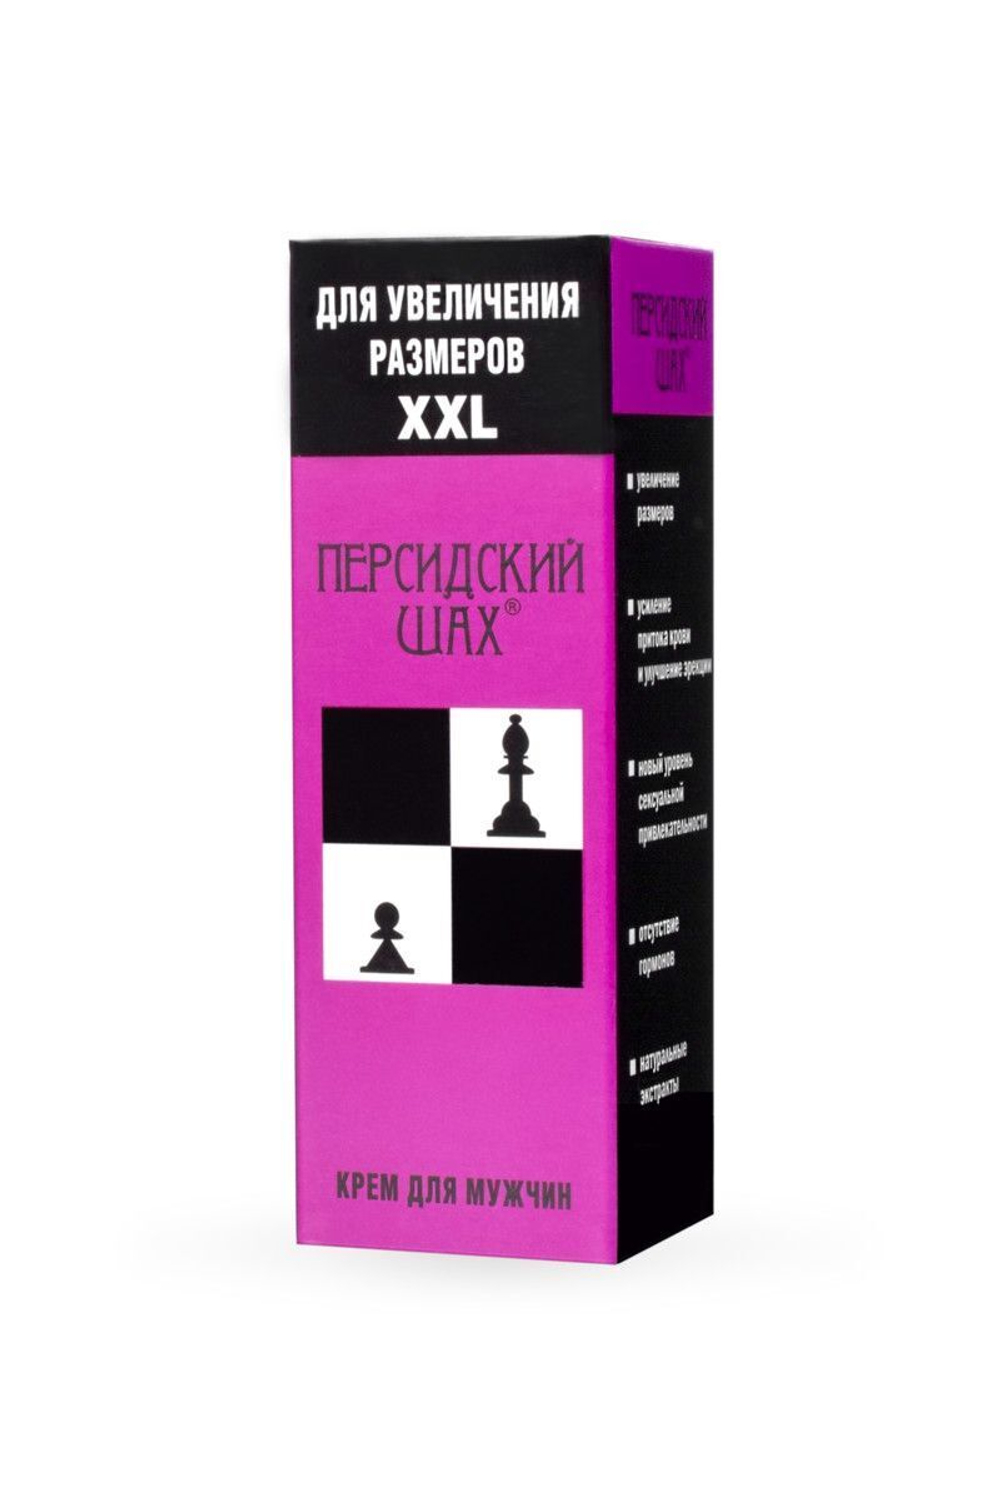 Крем для увеличения полового члена "Персидский шах" - 50 гр